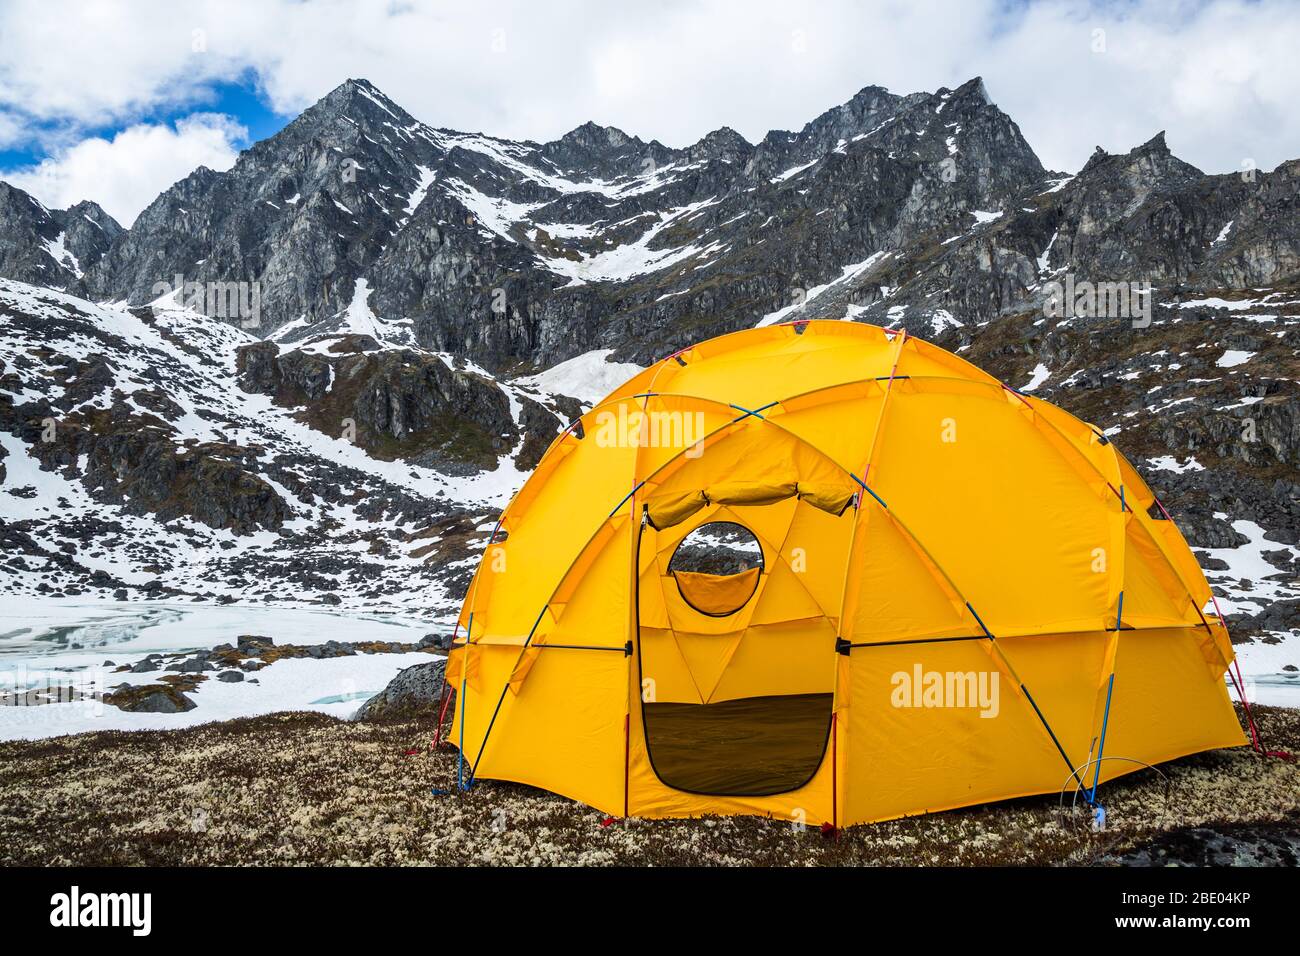 Grande tenda a cupola gialla per molte persone allestite nella natura selvaggia delle montagne Talkeetna in Alaska. Foto Stock